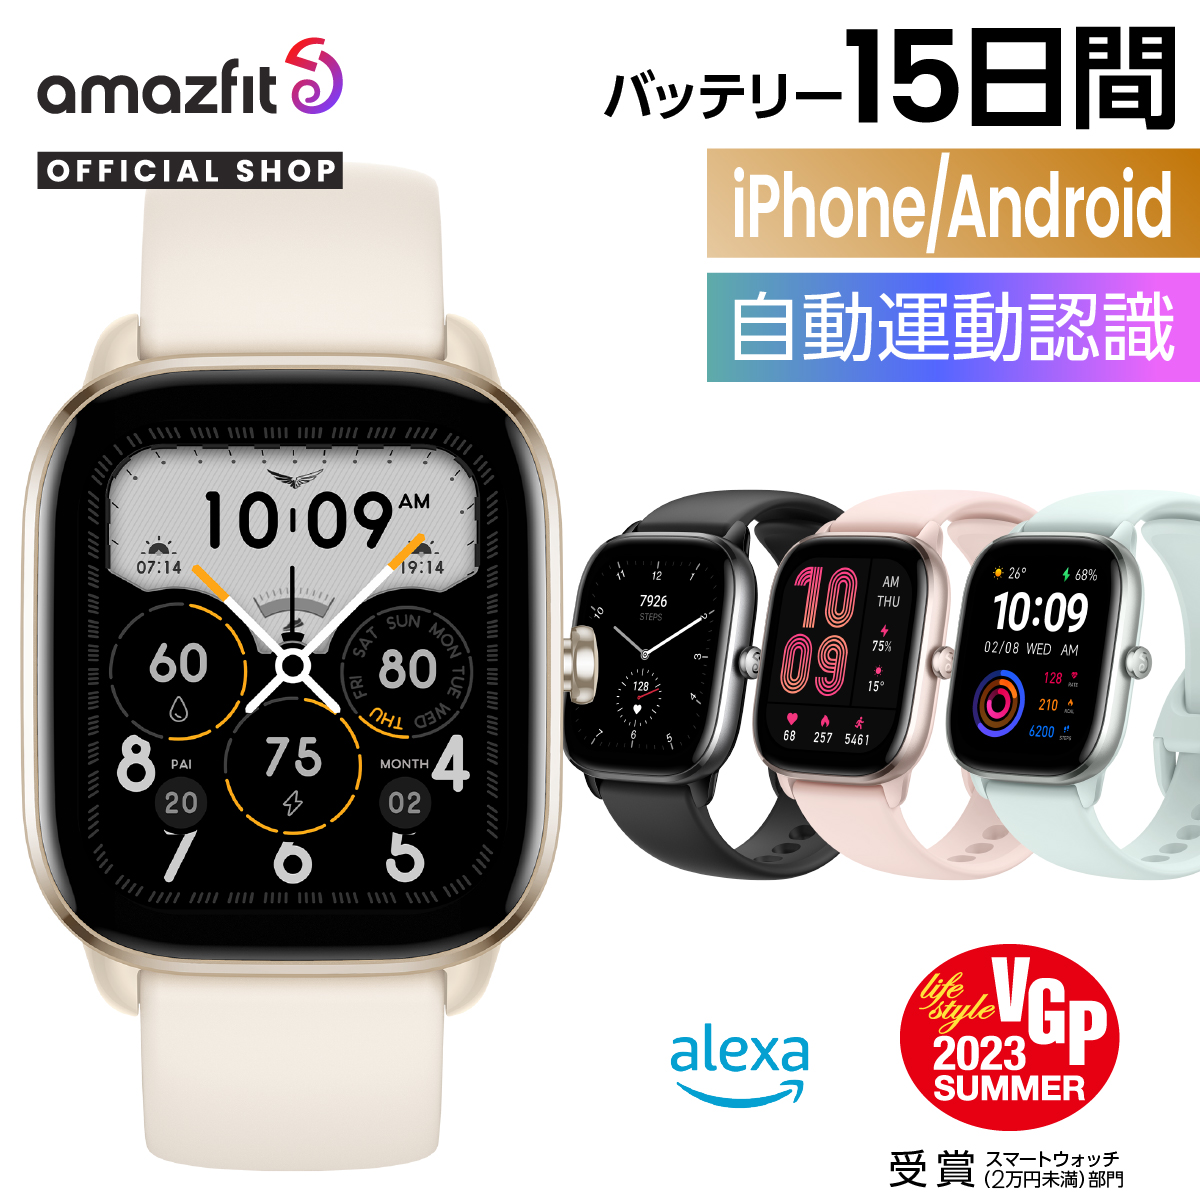 スマートウォッチ Amazfit GTS 4 Mini アマズフィット 日本正規代理店 